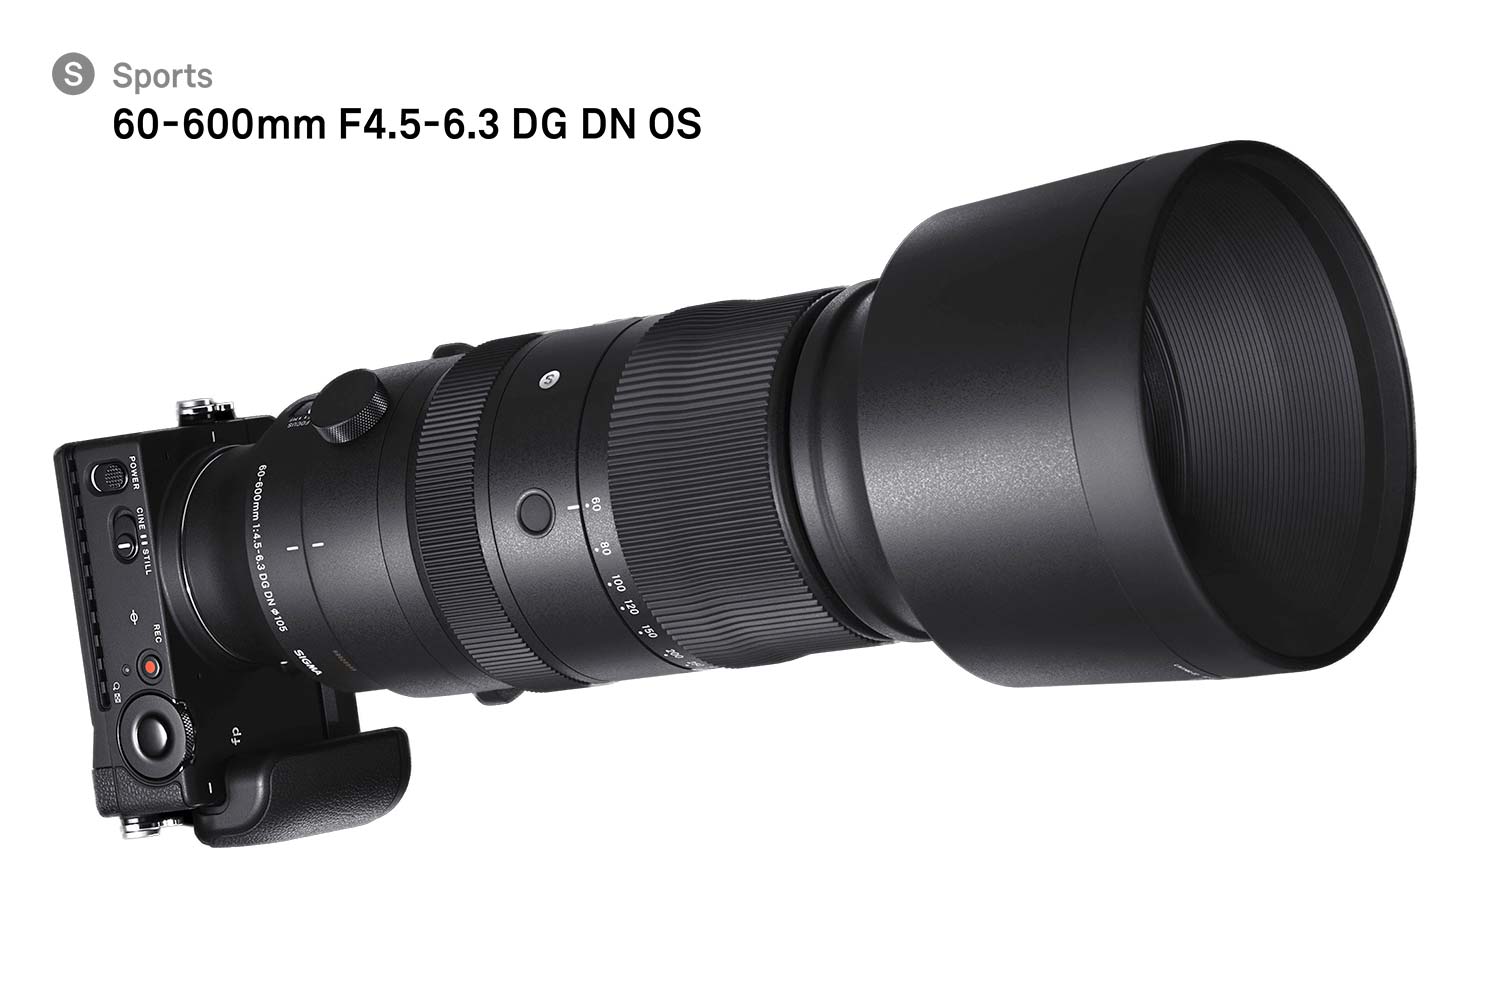 Sigma 60-600mm F4.5-6.3 DG DN OS Sports